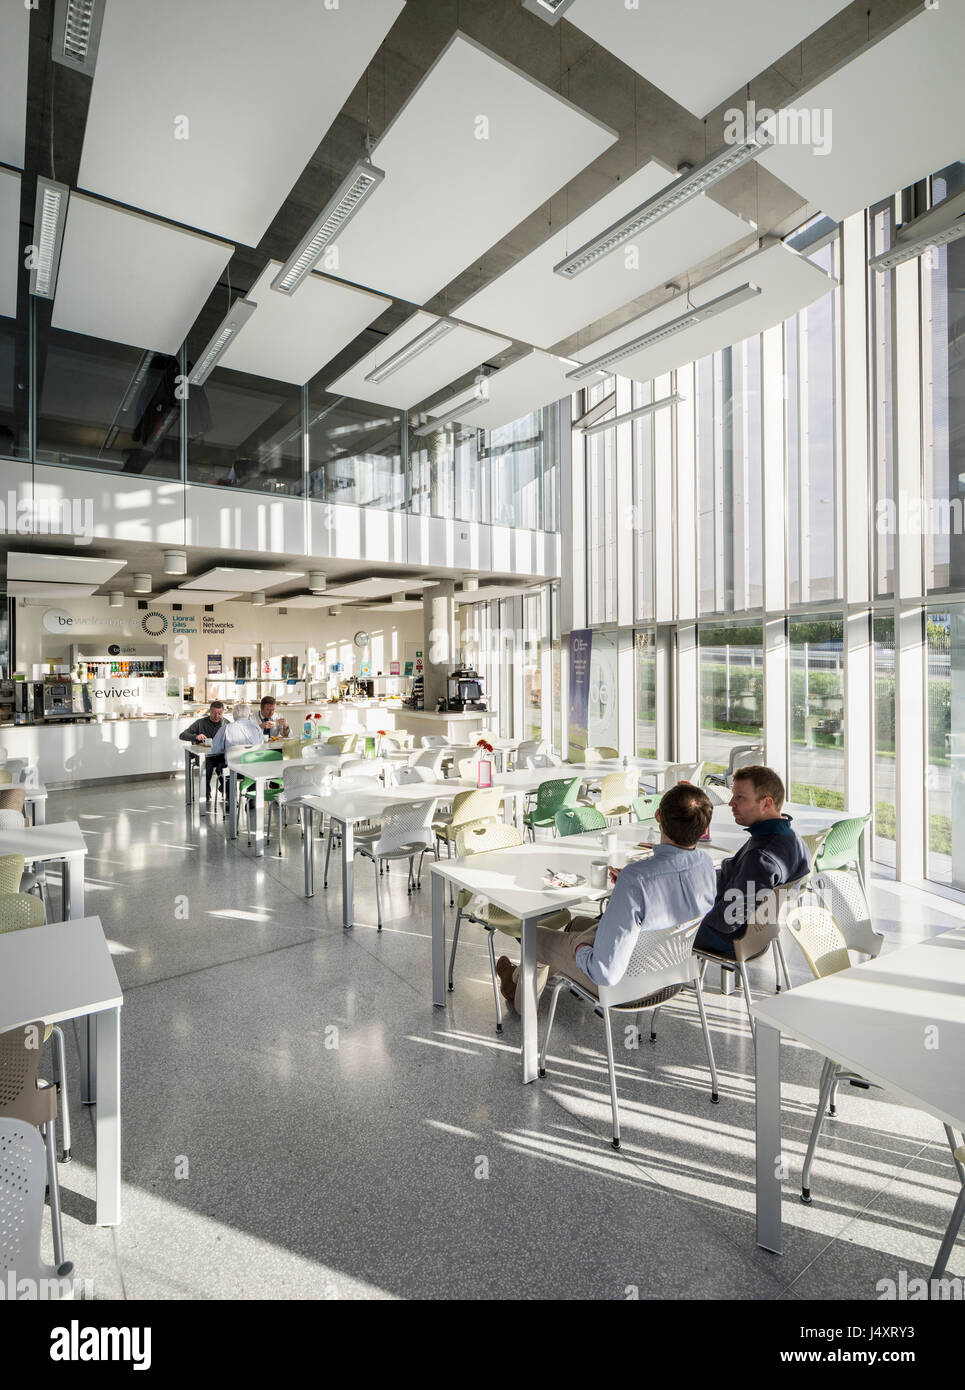 Kantine Cafe Interieur. Die Gasnetze Irland, Dublin, Irland. Architekt: Denis Byrne Architekten, 2015. Stockfoto